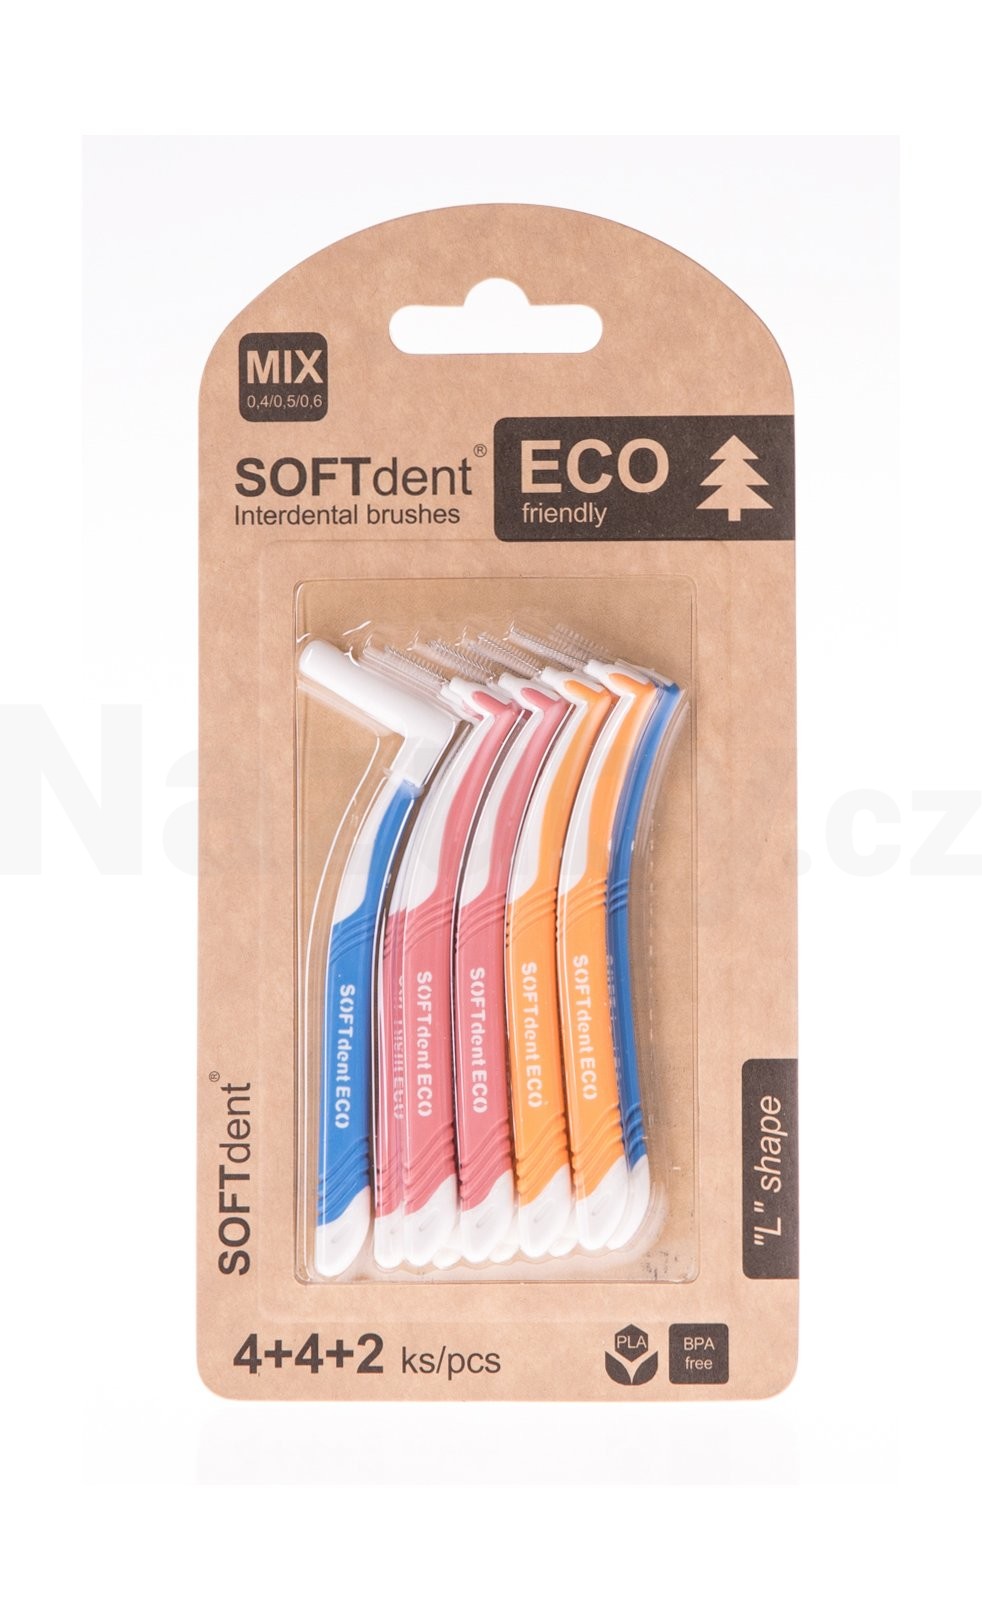 Fotografie SoftDent Eco mezizubní kartáček zahnutý, mix velikostí, 10 ks